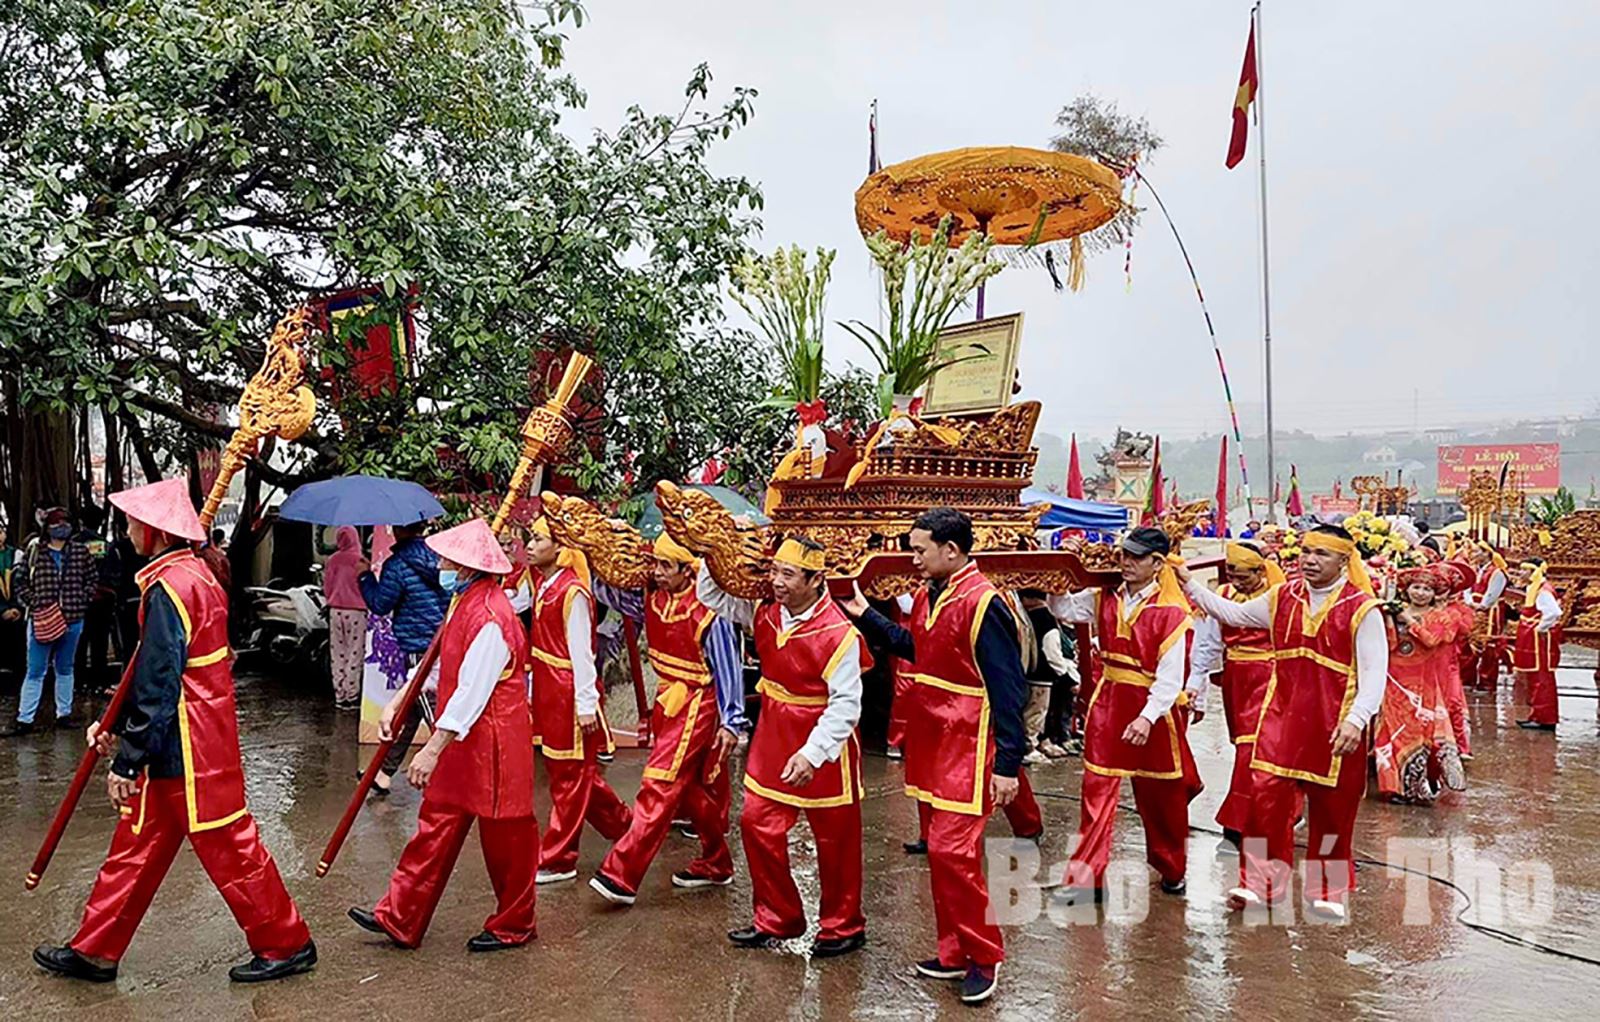 Đó là một  lễ hội khá độc đáo, giàu ý nghĩa nhân văn ở Minh Nông, thành phố Việt Trì, tỉnh Phú Thọ - Lễ hội Vua Hùng dạy dân cấy lúa. Lễ hội này rất cổ xưa,  nó bị mai một trước năm 1945 đến năm 1993 đã dần được khôi phục. Những năm gần đây, thành phố Việt Trì tổ chức lễ hội quy mô lớn cả phần lễ và phần hội với mong muốn  lễ hội này trở thành di sản văn hóa phi vật thể cấp quốc gia, đồng thời là một điểm nhấn trong chương trình Về miền lễ hội cội nguồn dân tộc Việt Nam của tỉnh Phú Thọ, điểm du lịch hấp dẫn của Việt Trì. 